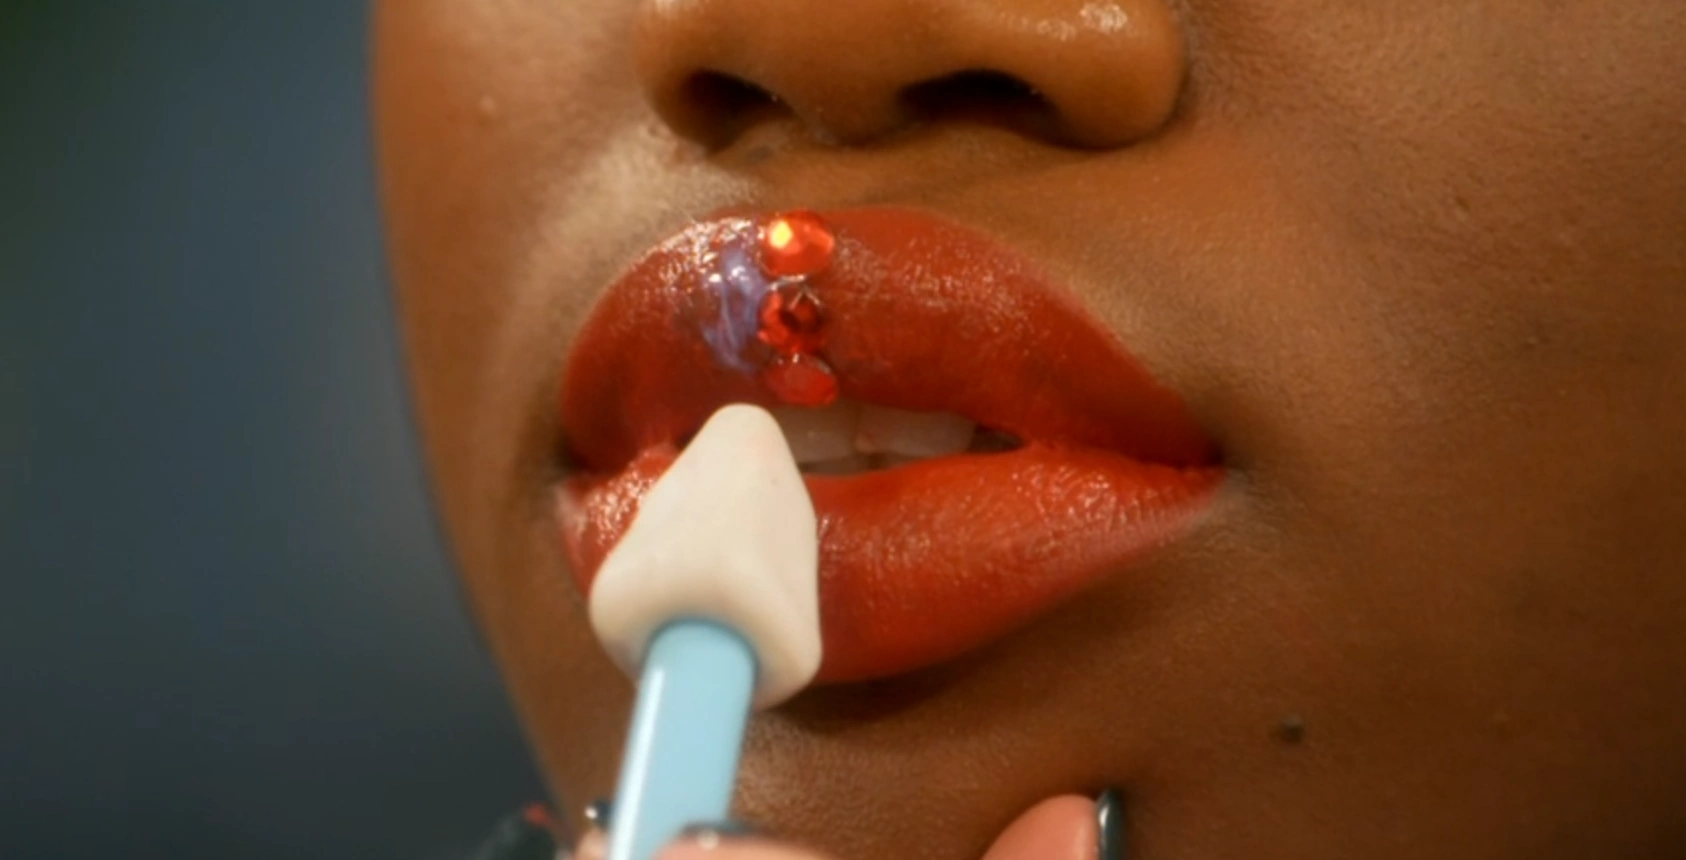 MUA applying jewels to a model's lip